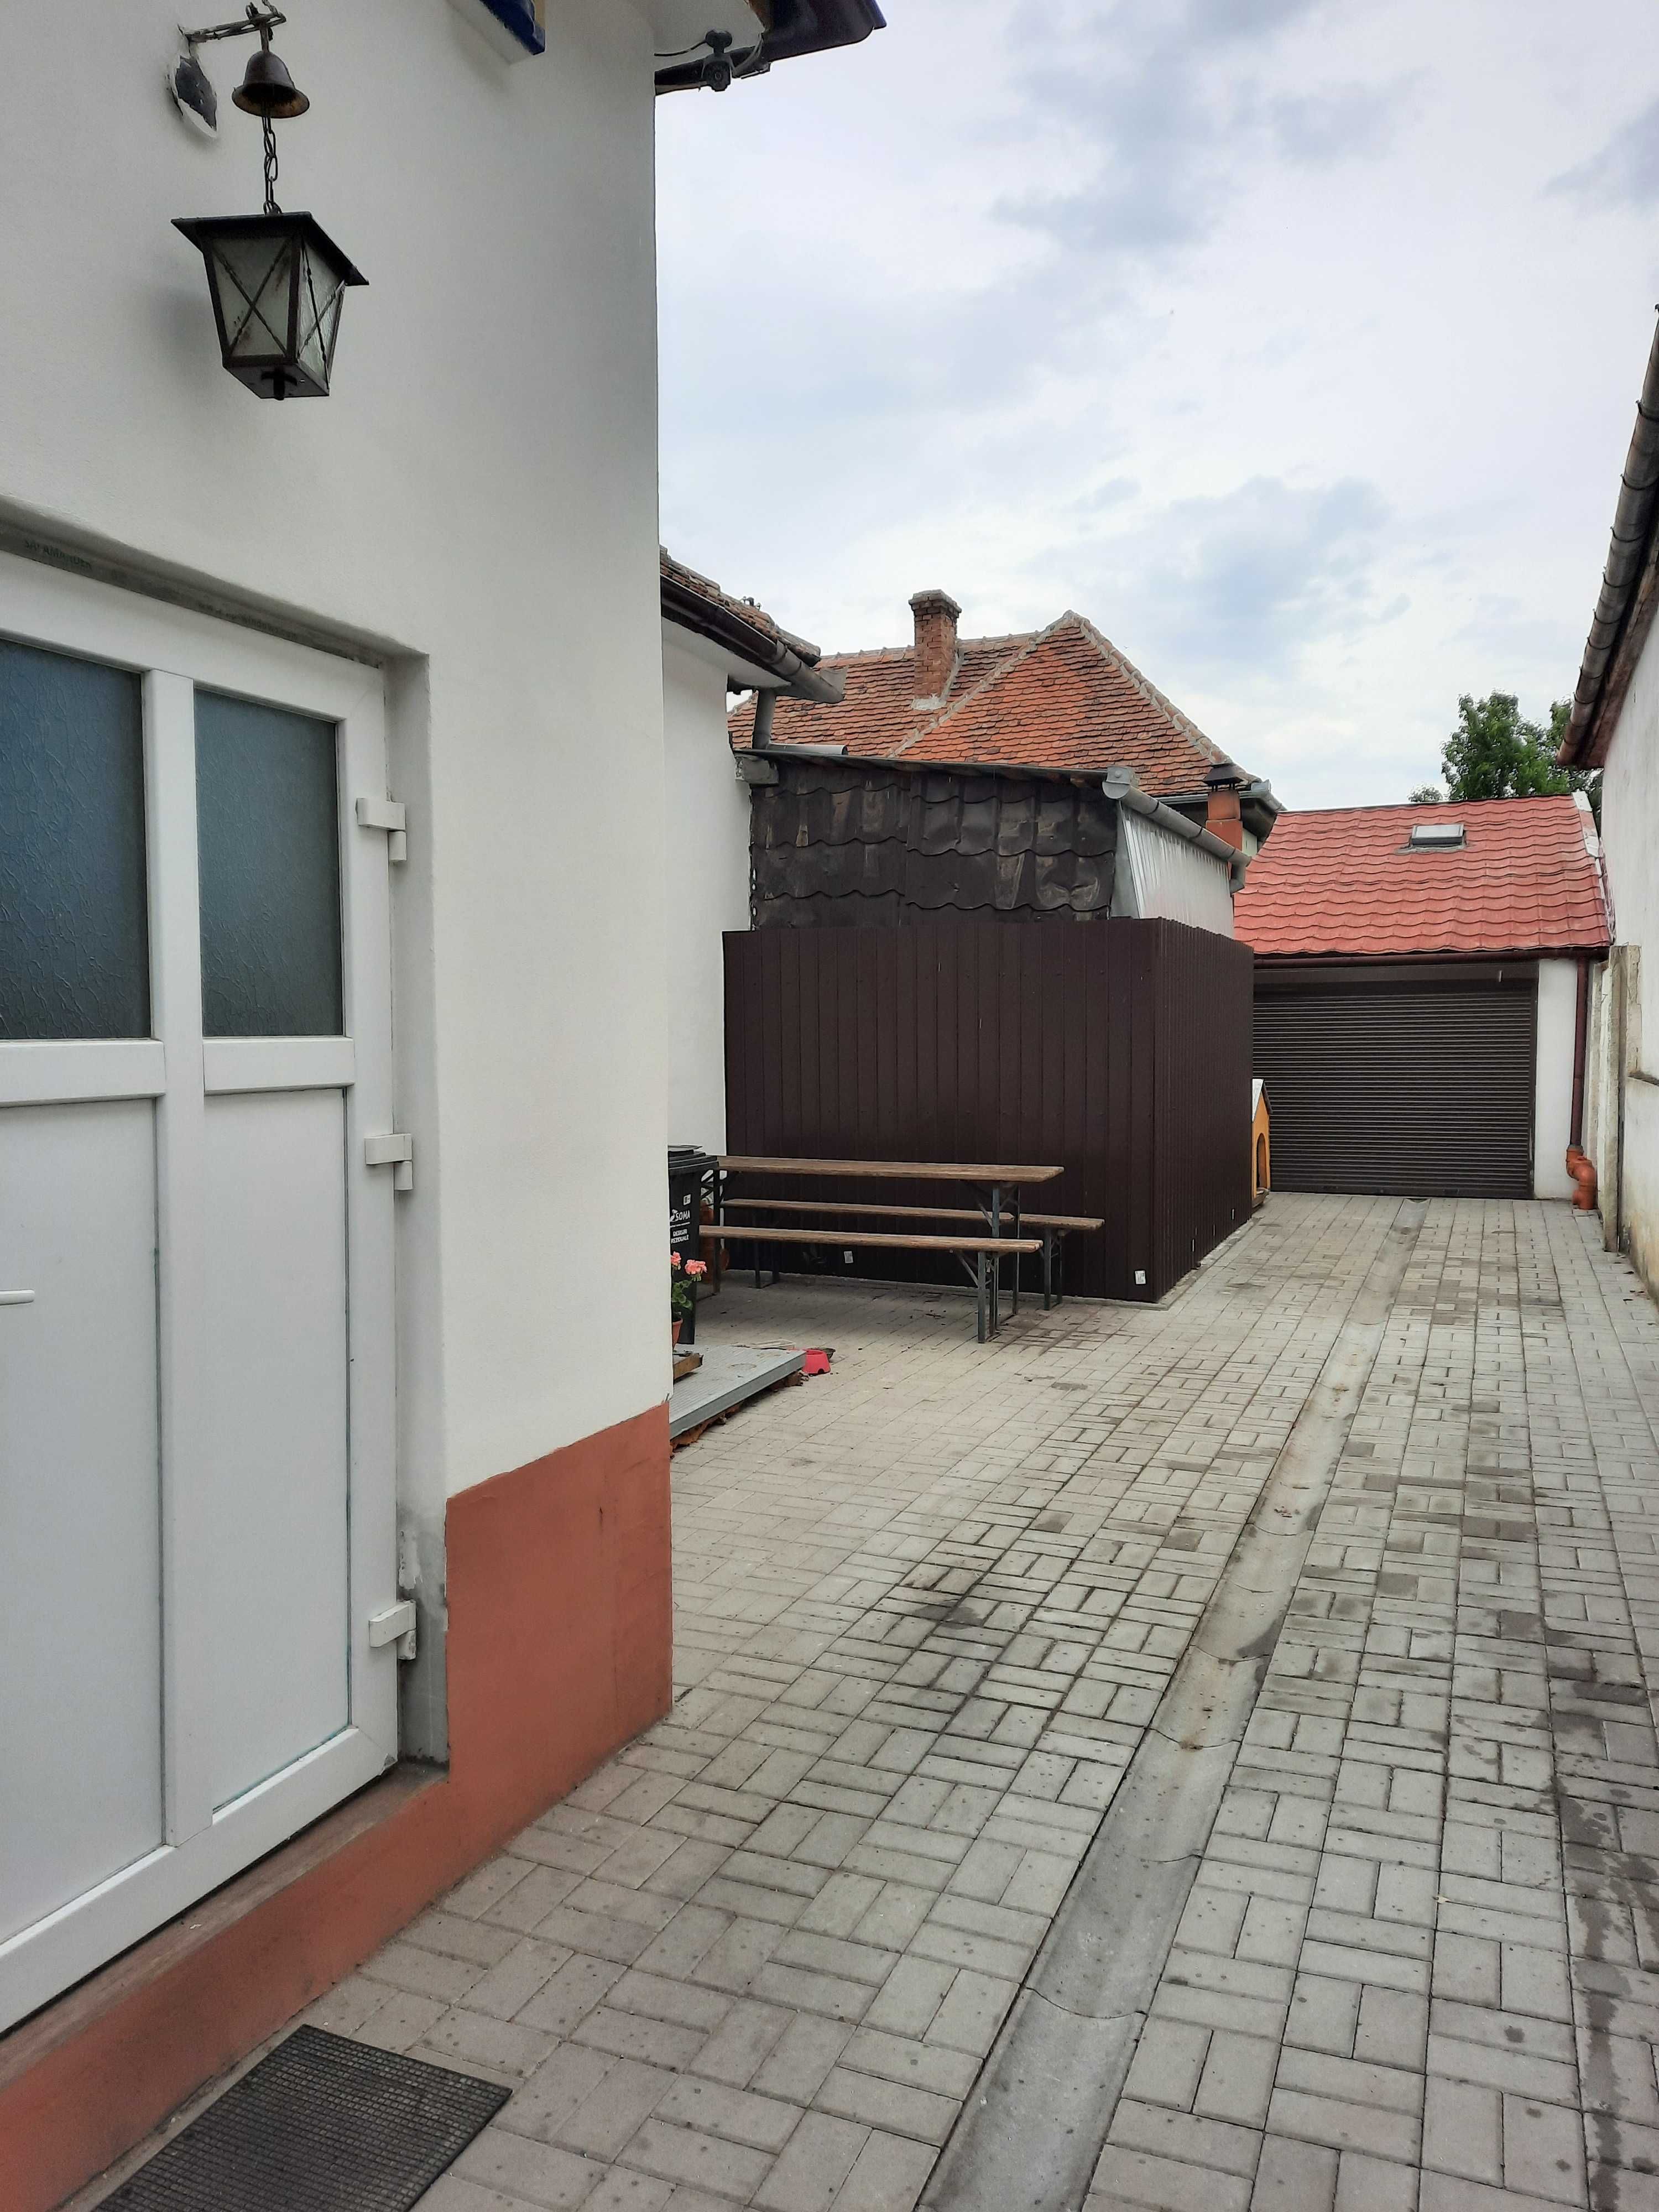 Vand casa tip duplex singur in curte Sibiu, zona Piata Cluj-Terezian.